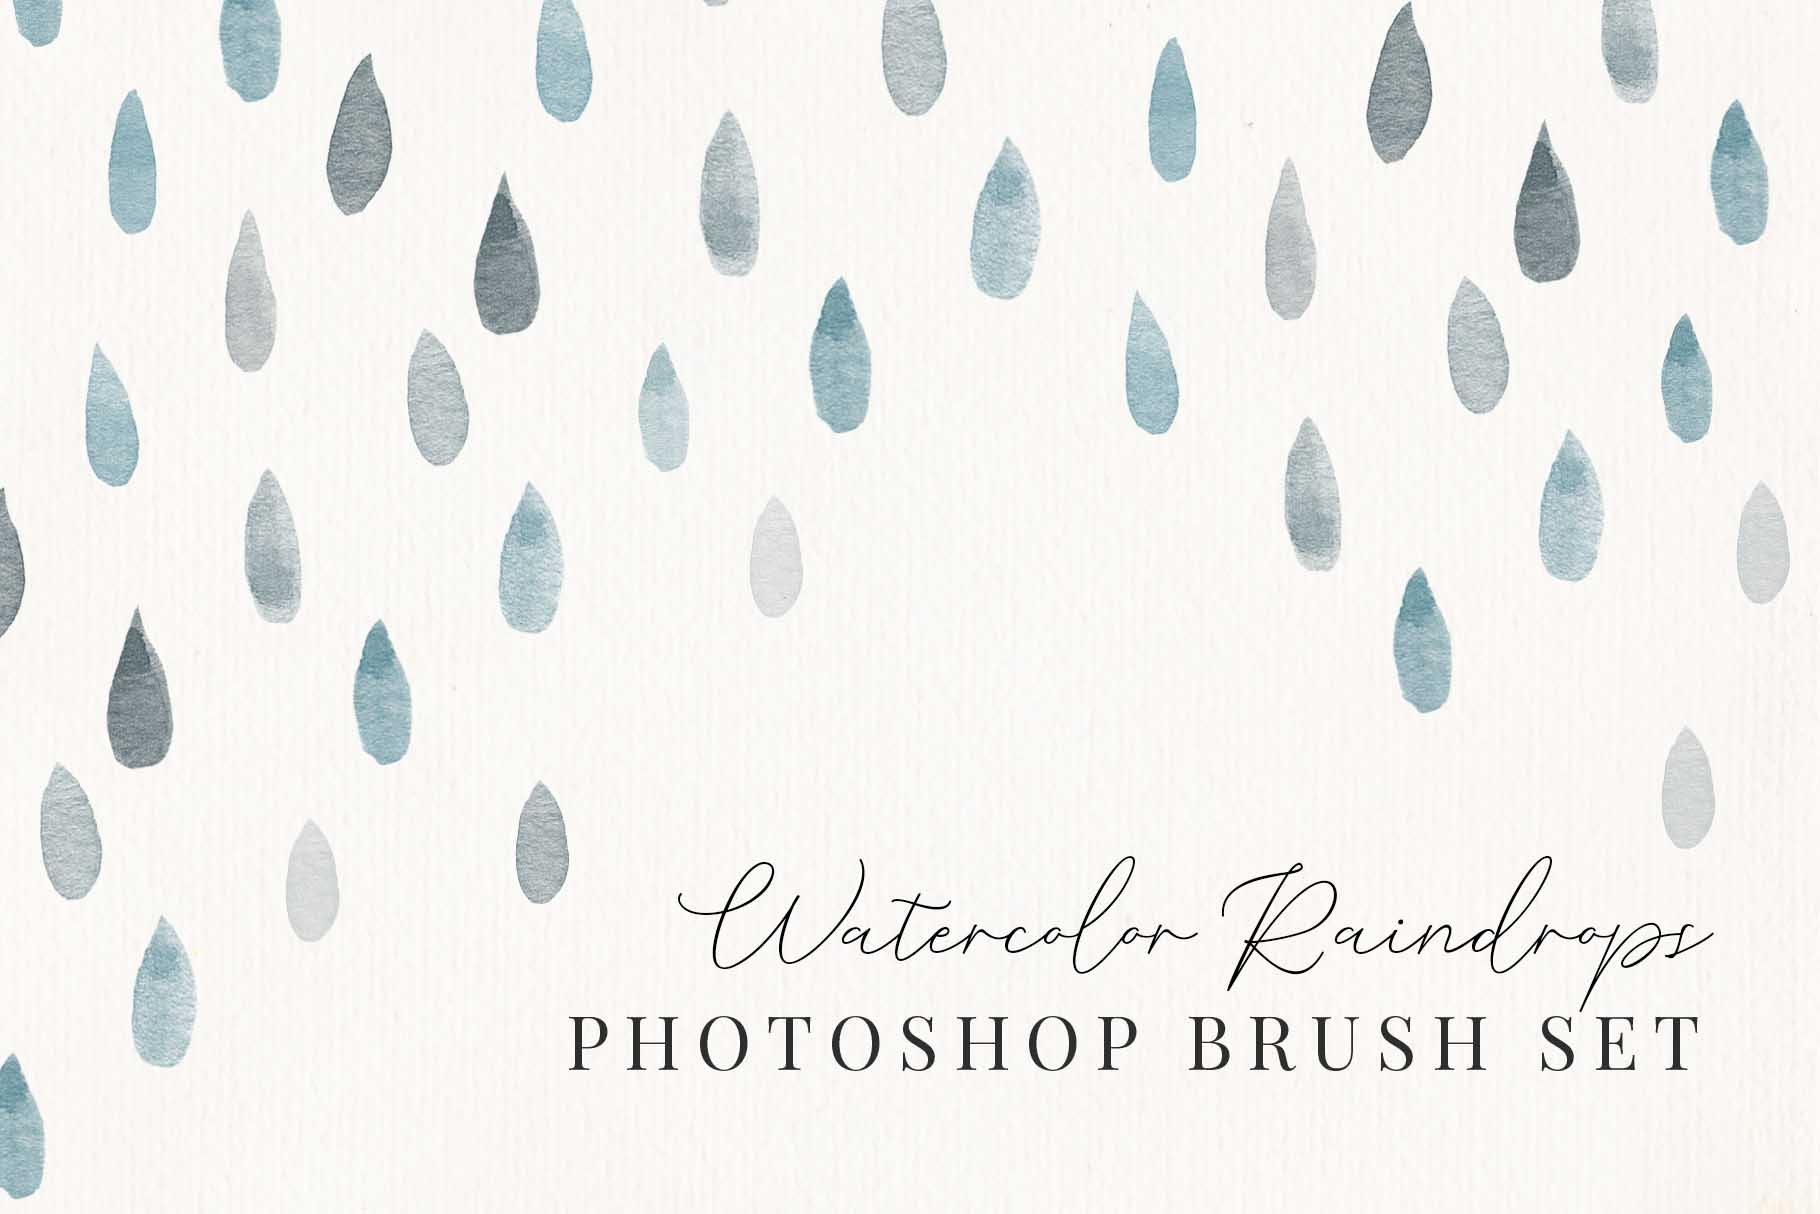 Raindrops Photoshop Brush Setcover image.